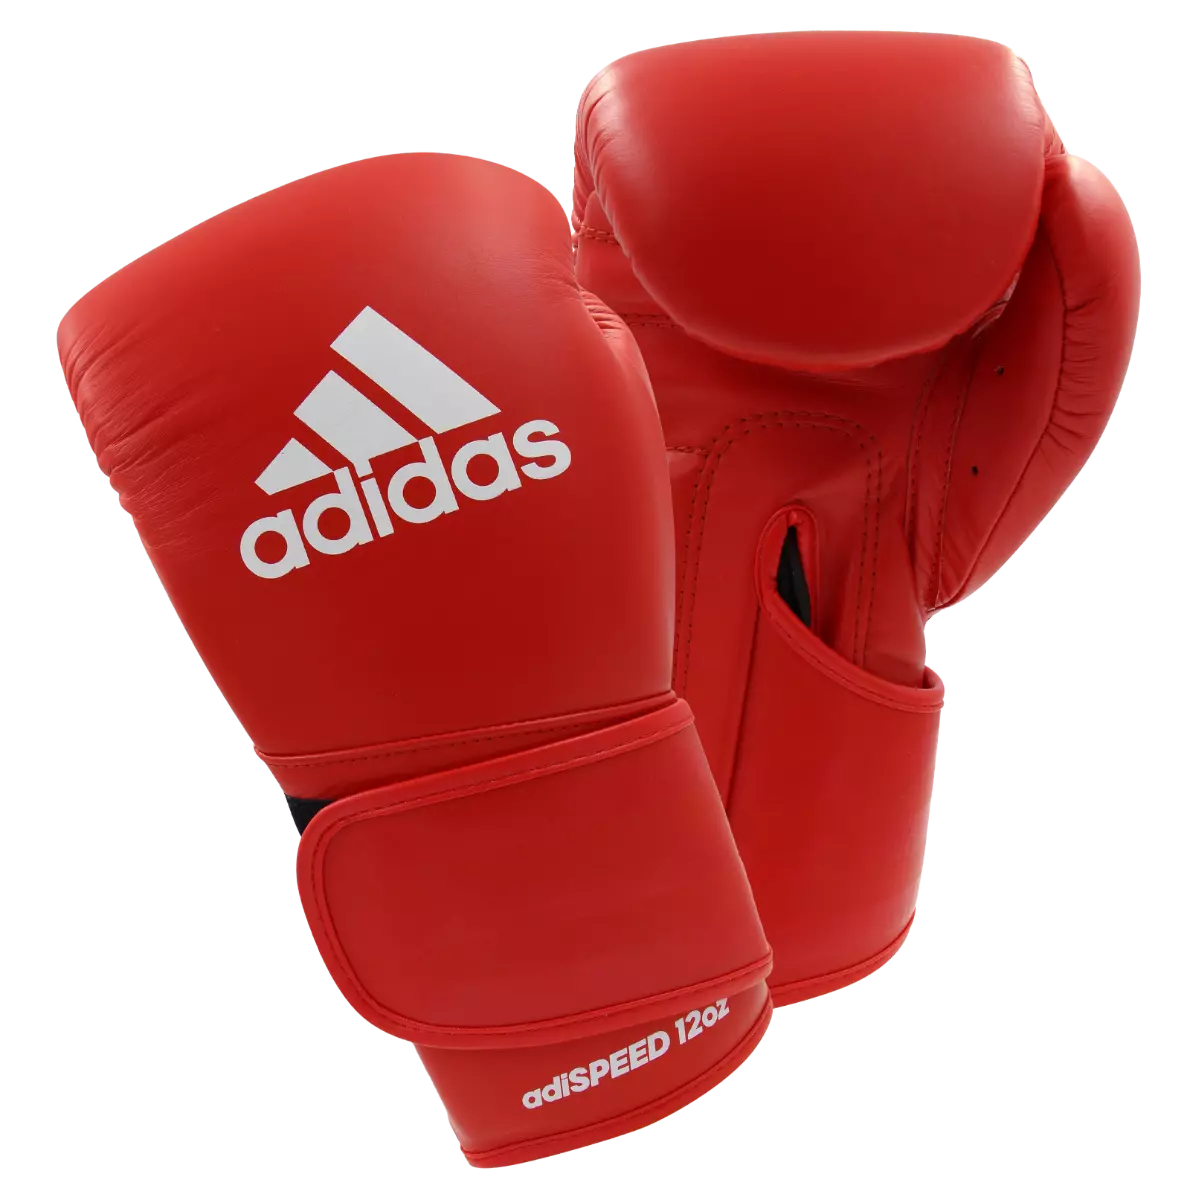 adidas Adispeed Pro Leather Boxing Gloves